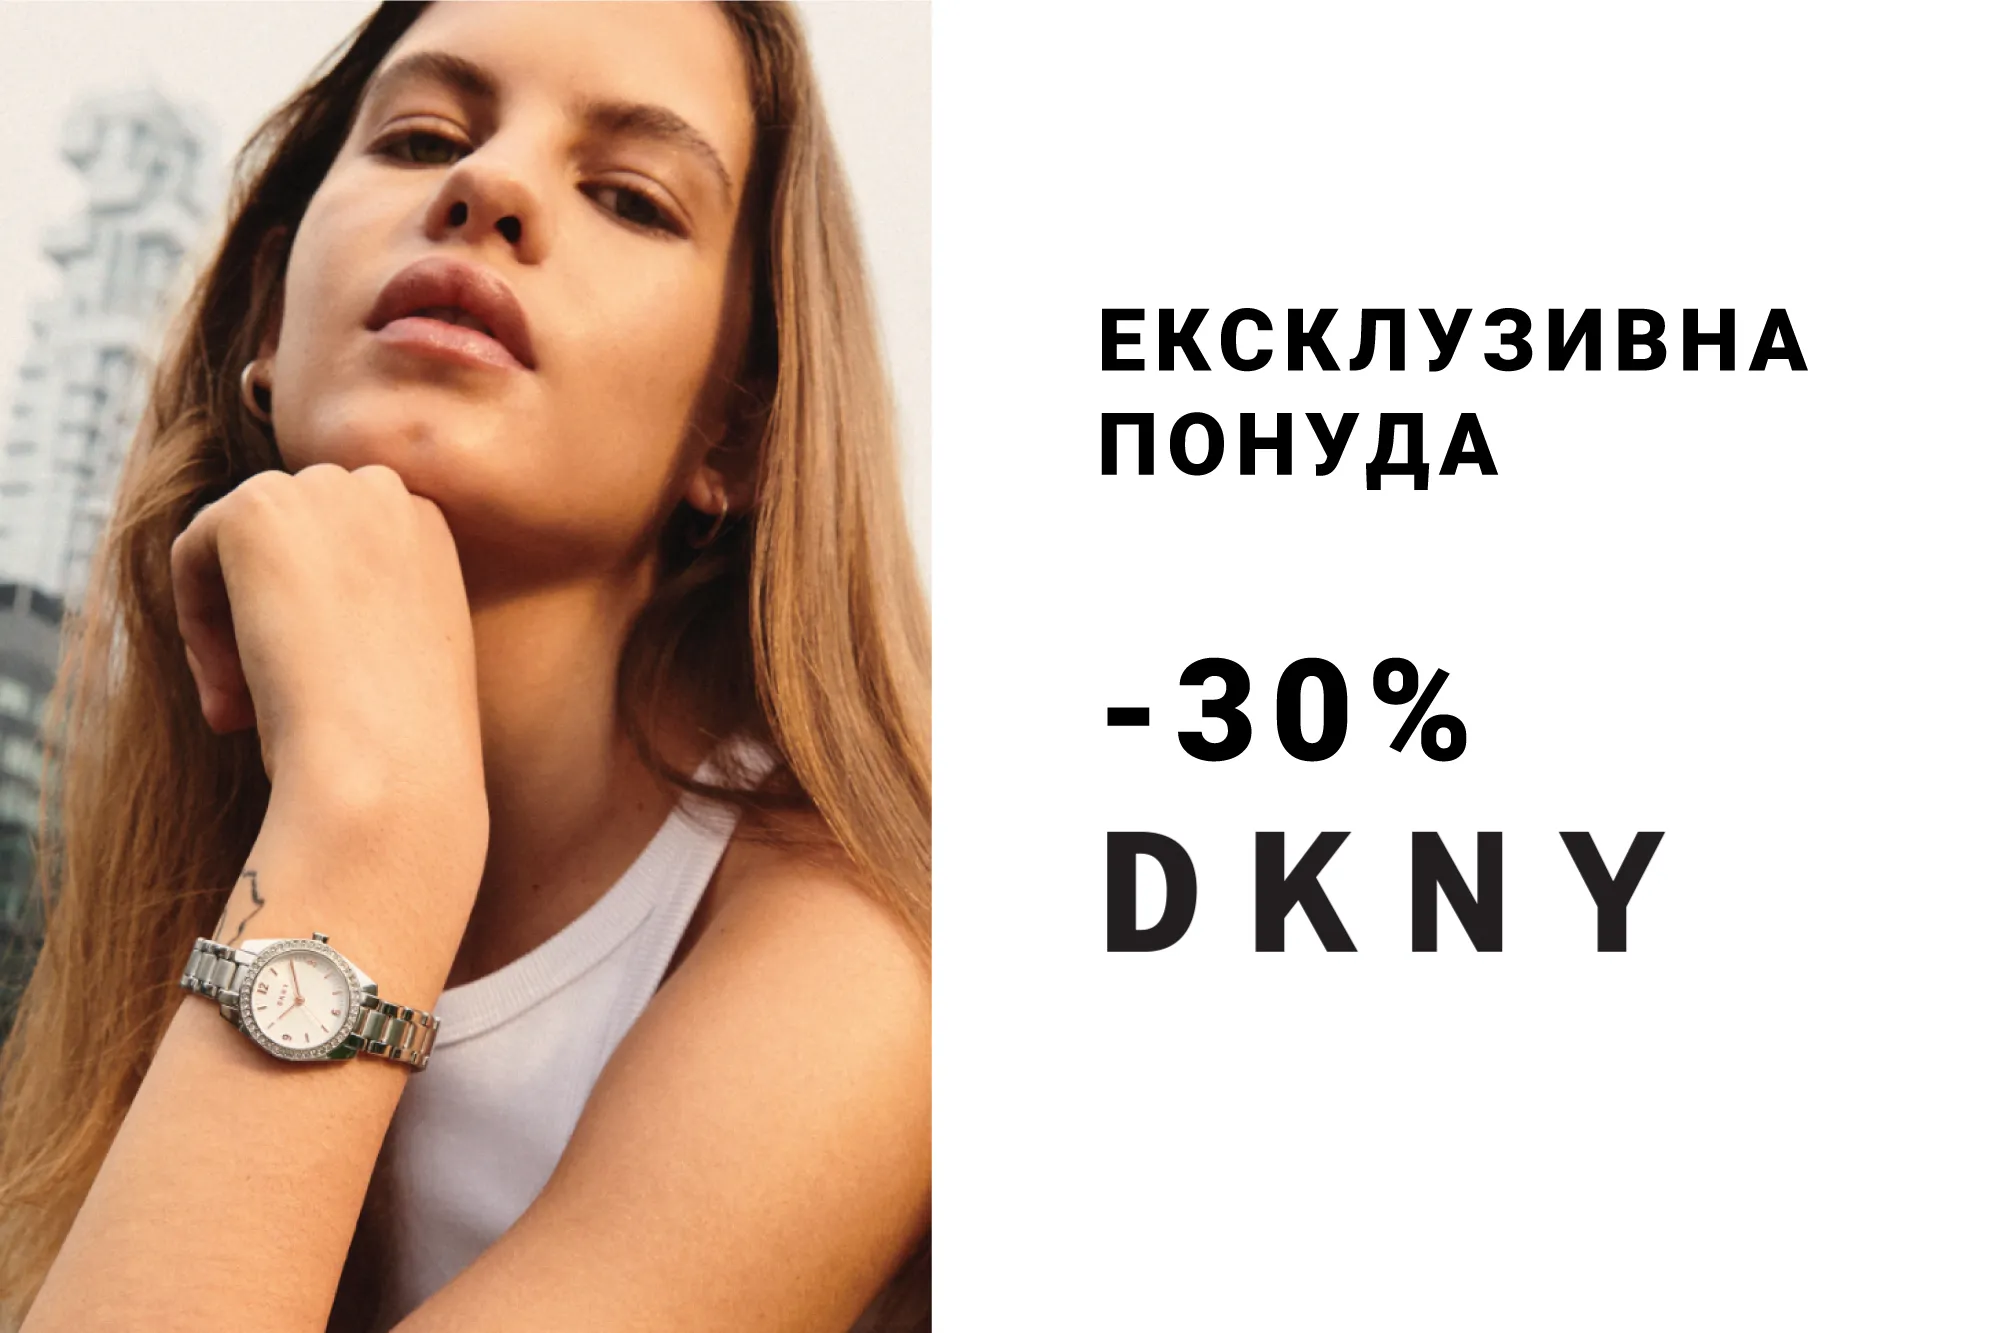 DKNY -30%